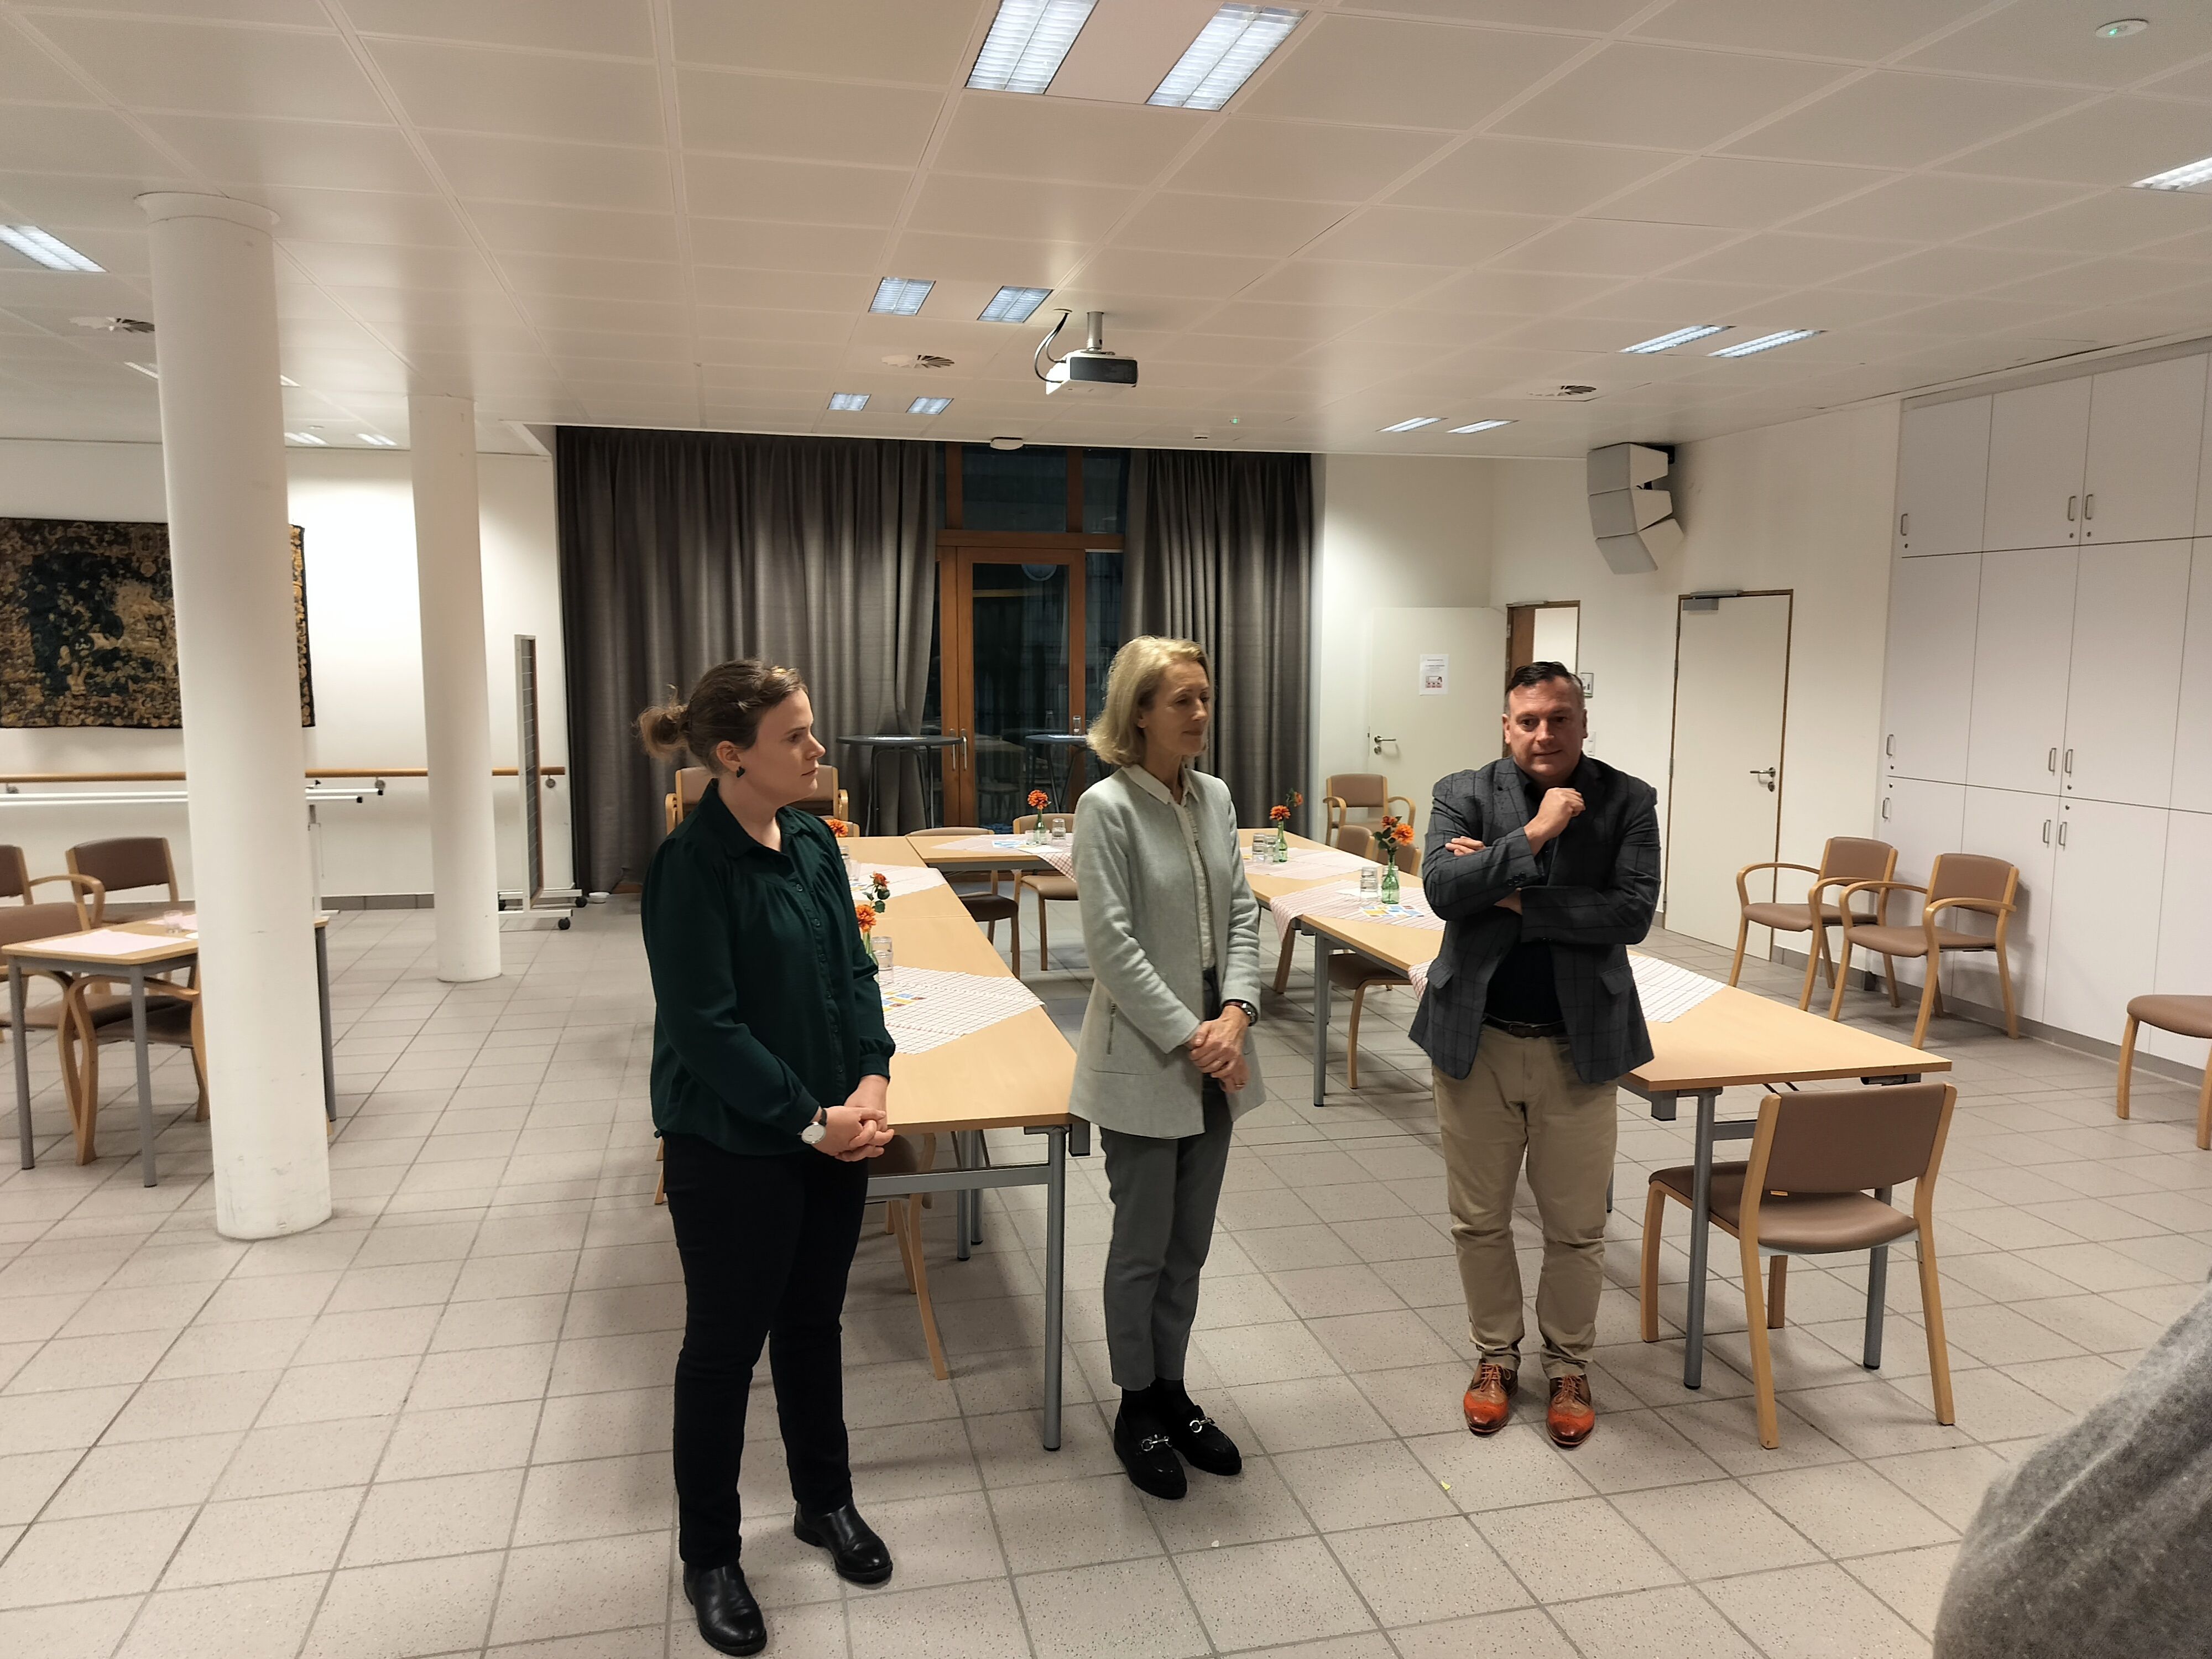 Op 27 november stelden gedeputeerde Gunther Coppens, Anne TRoussel, voorzitter OCMW Sint-Genesius-Rode, en Heidi Devillé van i-Diverso het taalstimuleringsproject 'Nederlands op de werkvloer' voor.